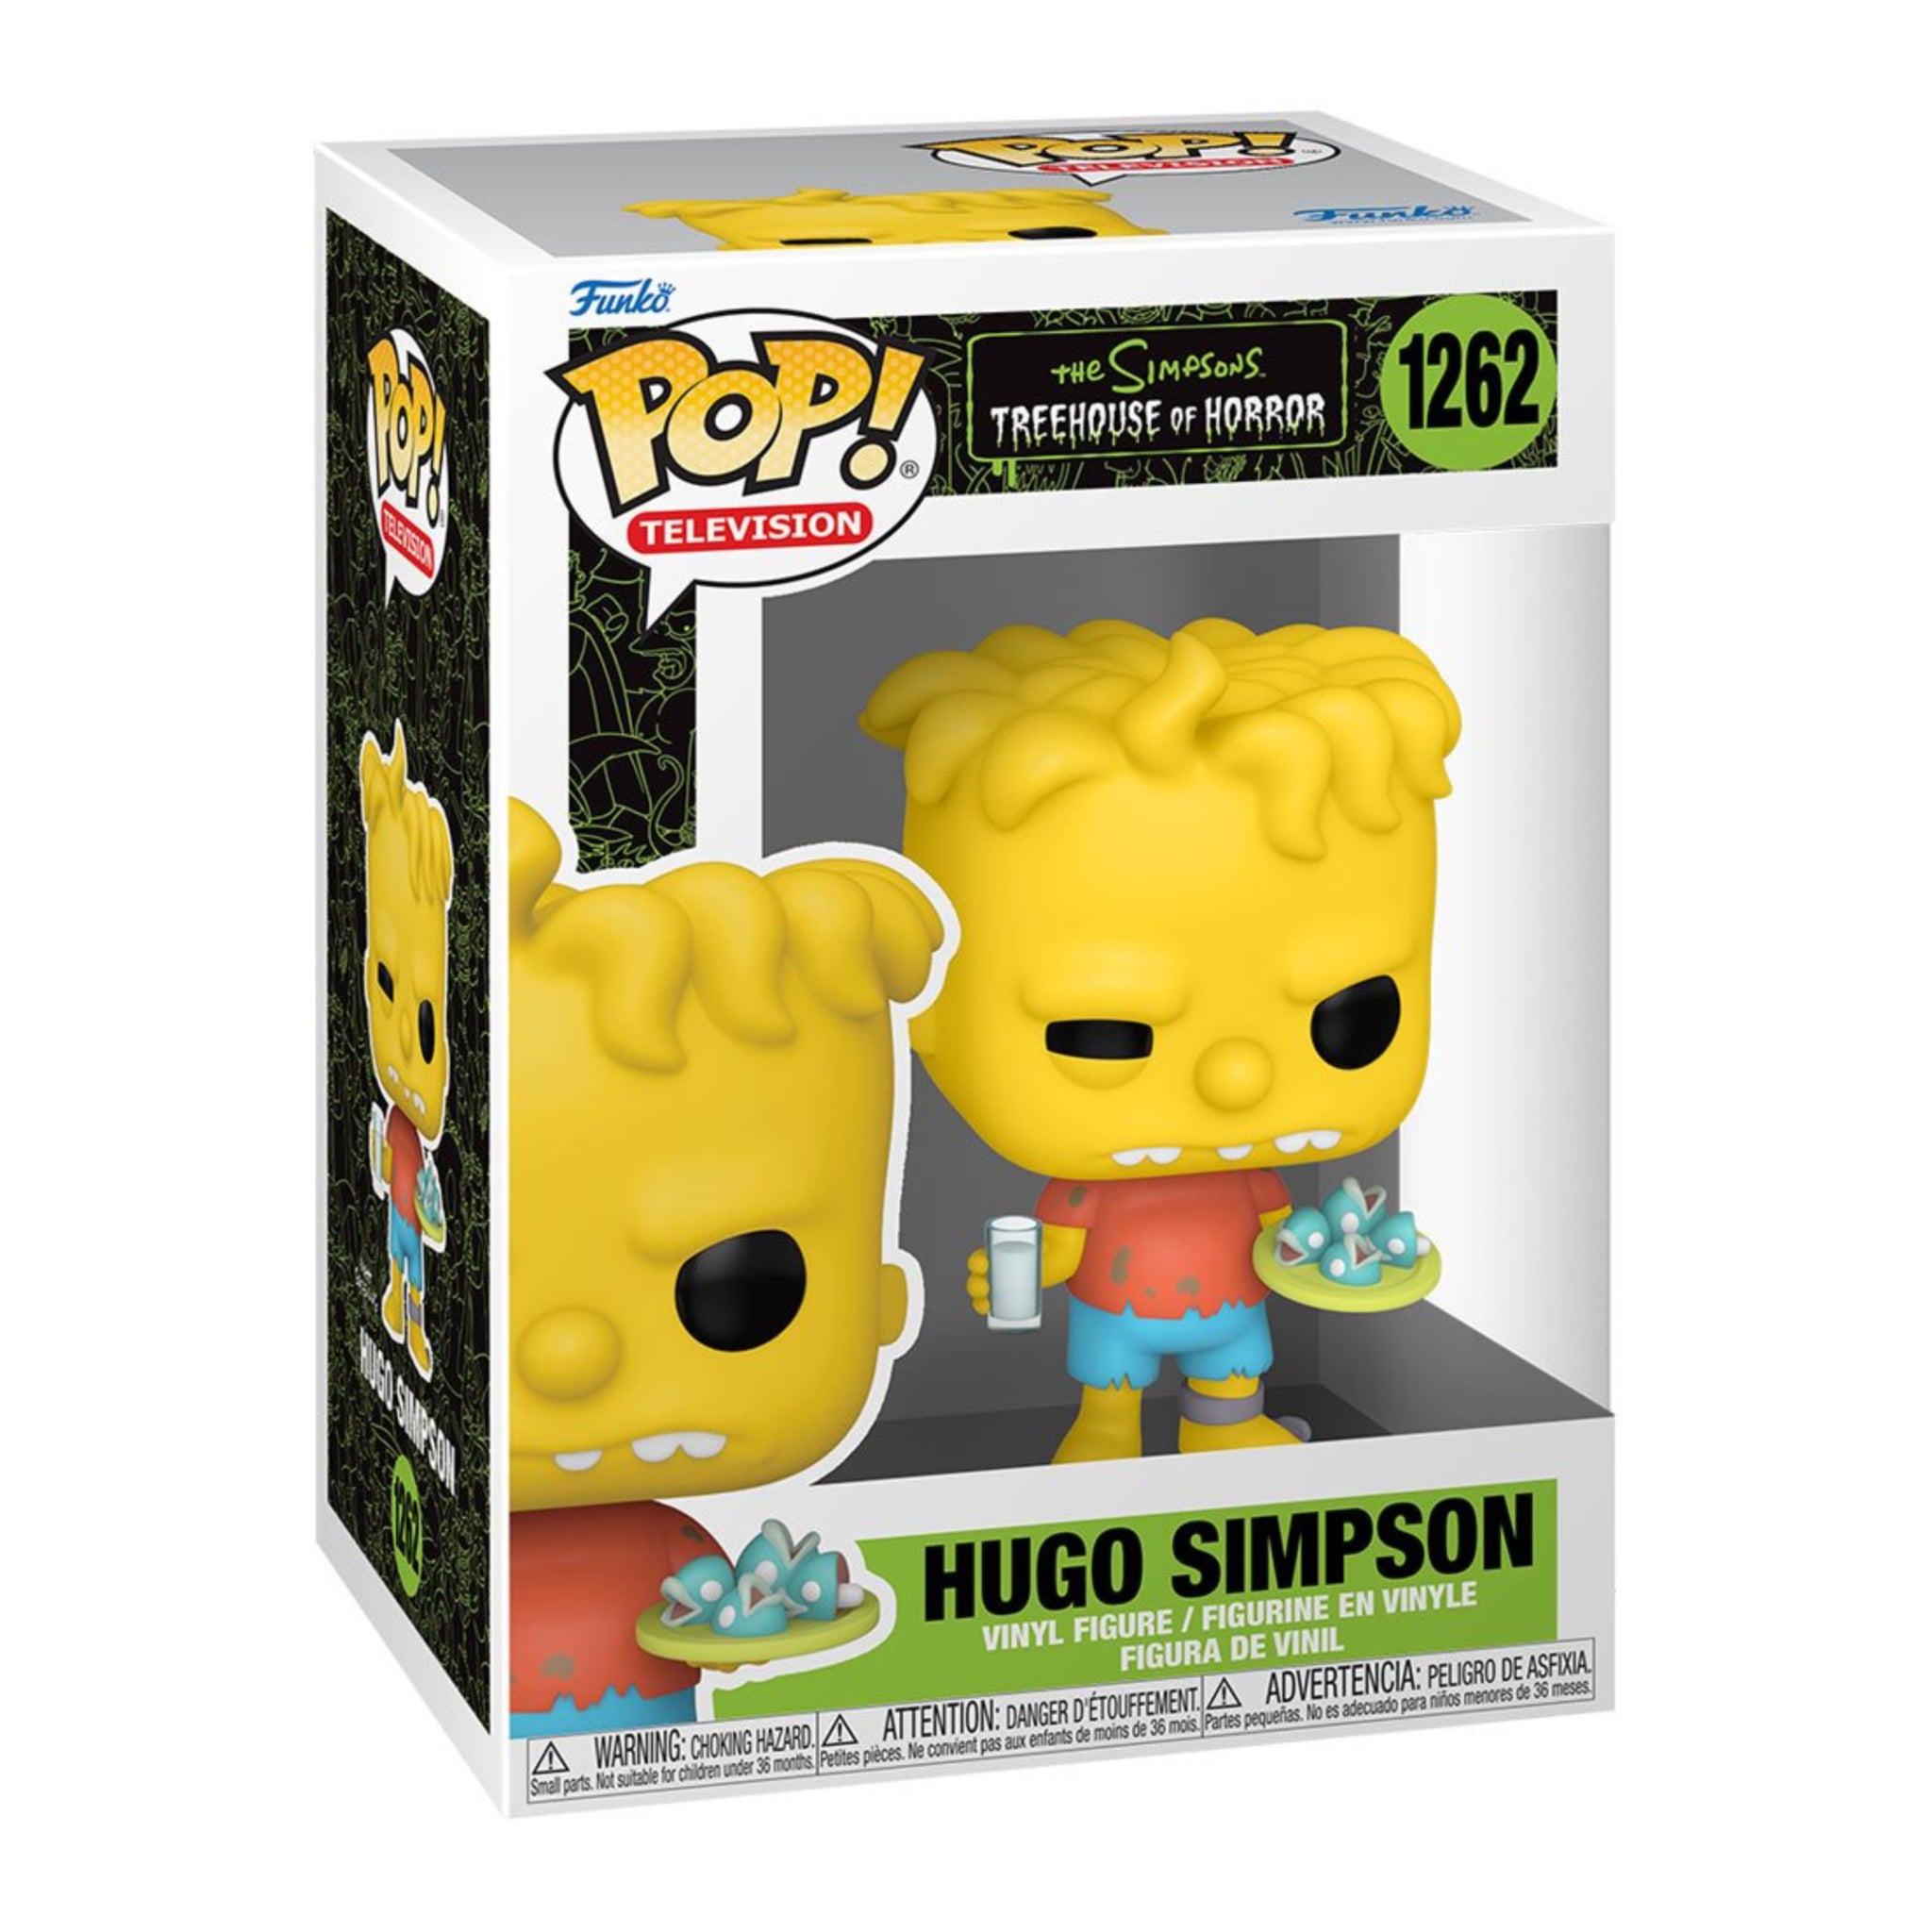 Hugo Simpson Funko Pop!